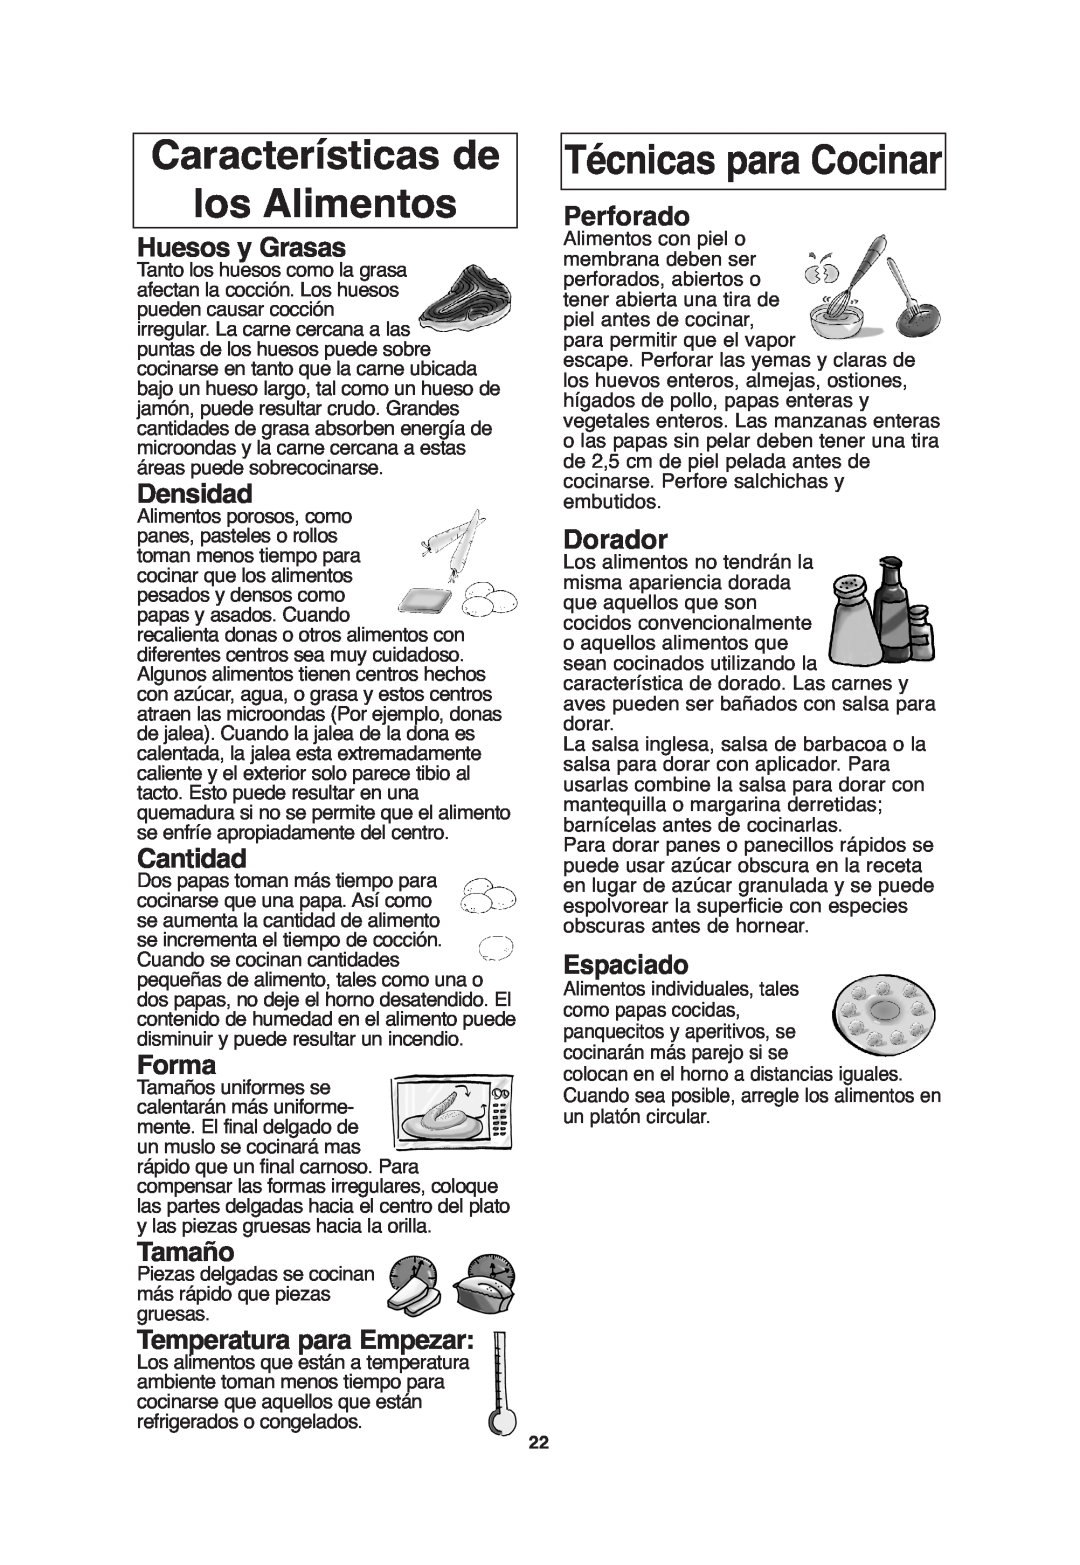 Panasonic S955 Características de los Alimentos, Técnicas para Cocinar, Huesos y Grasas, Densidad, Cantidad, Forma, Tamaño 